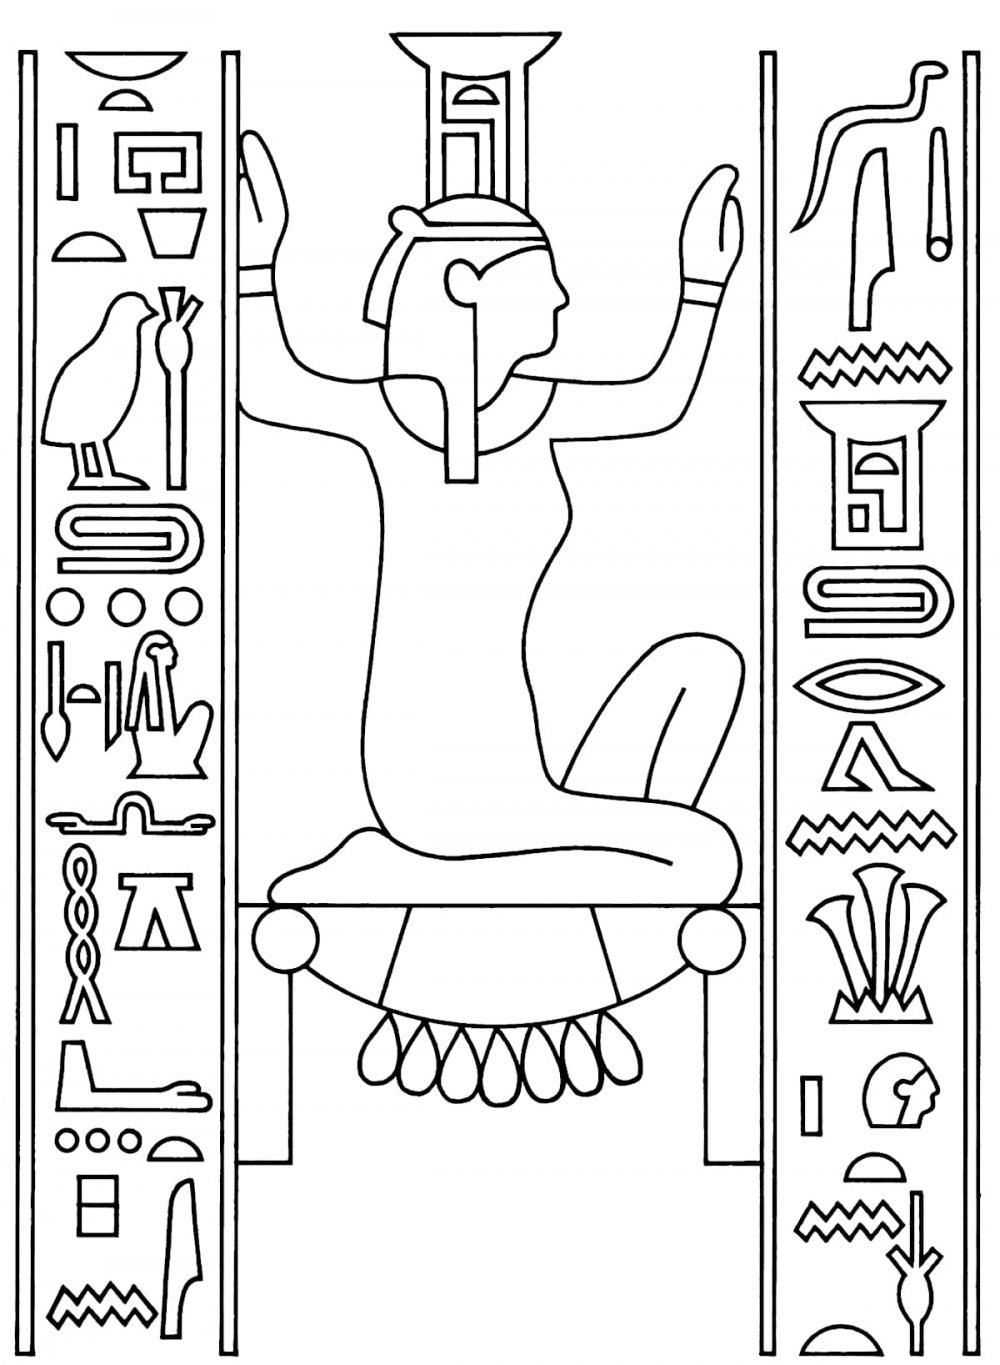 Древний Египет (нарисовать египетского Бога или фараона).